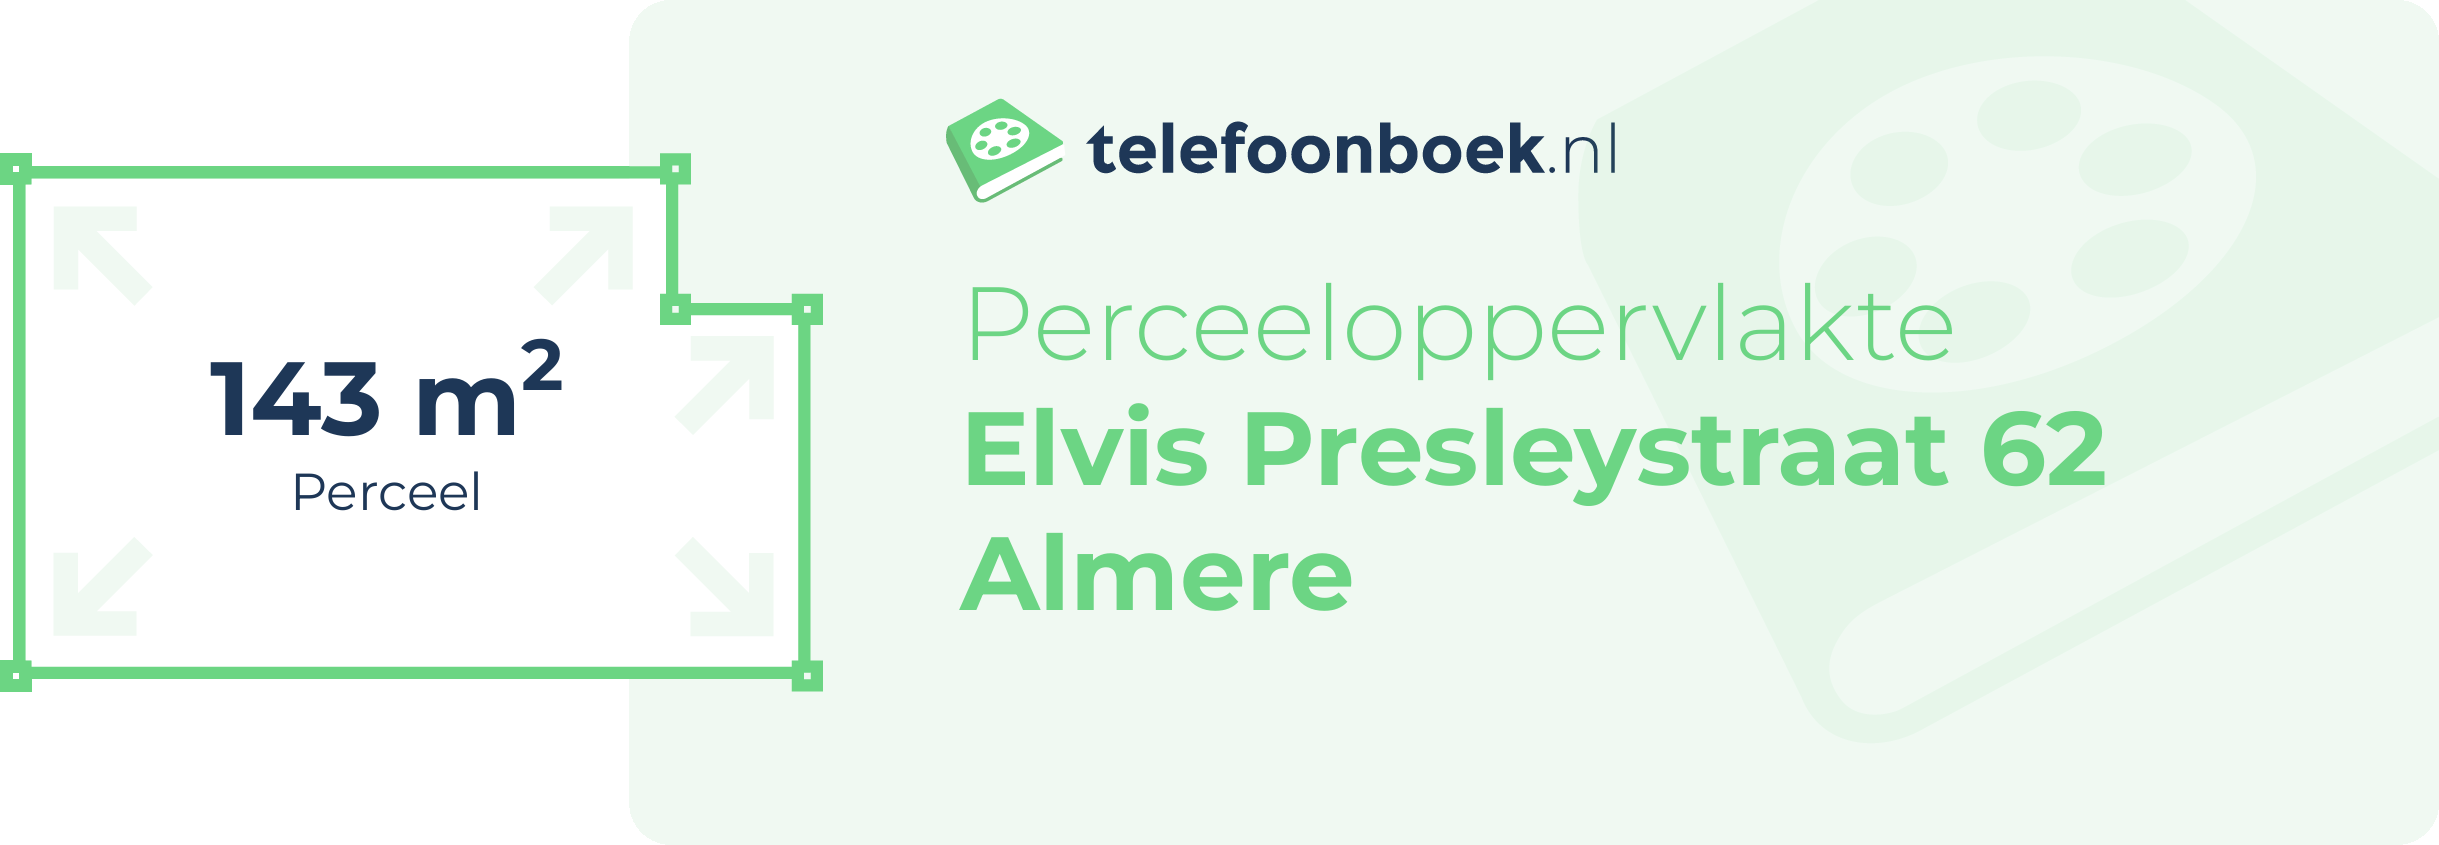 Perceeloppervlakte Elvis Presleystraat 62 Almere